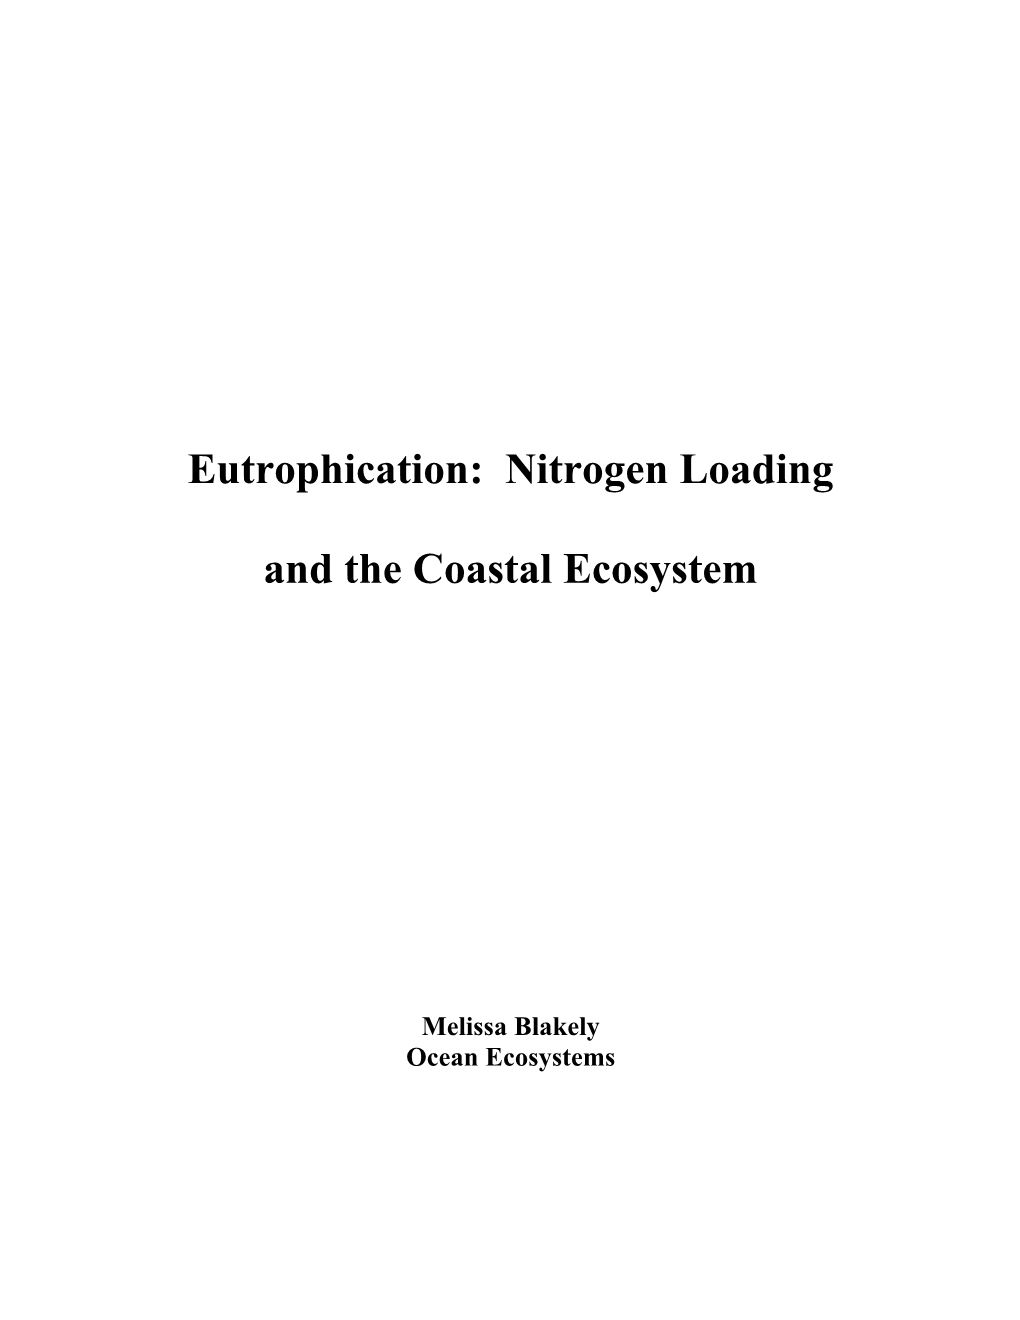 Eutrophication: Nitrogen Loading and the Coastal Ecosystem